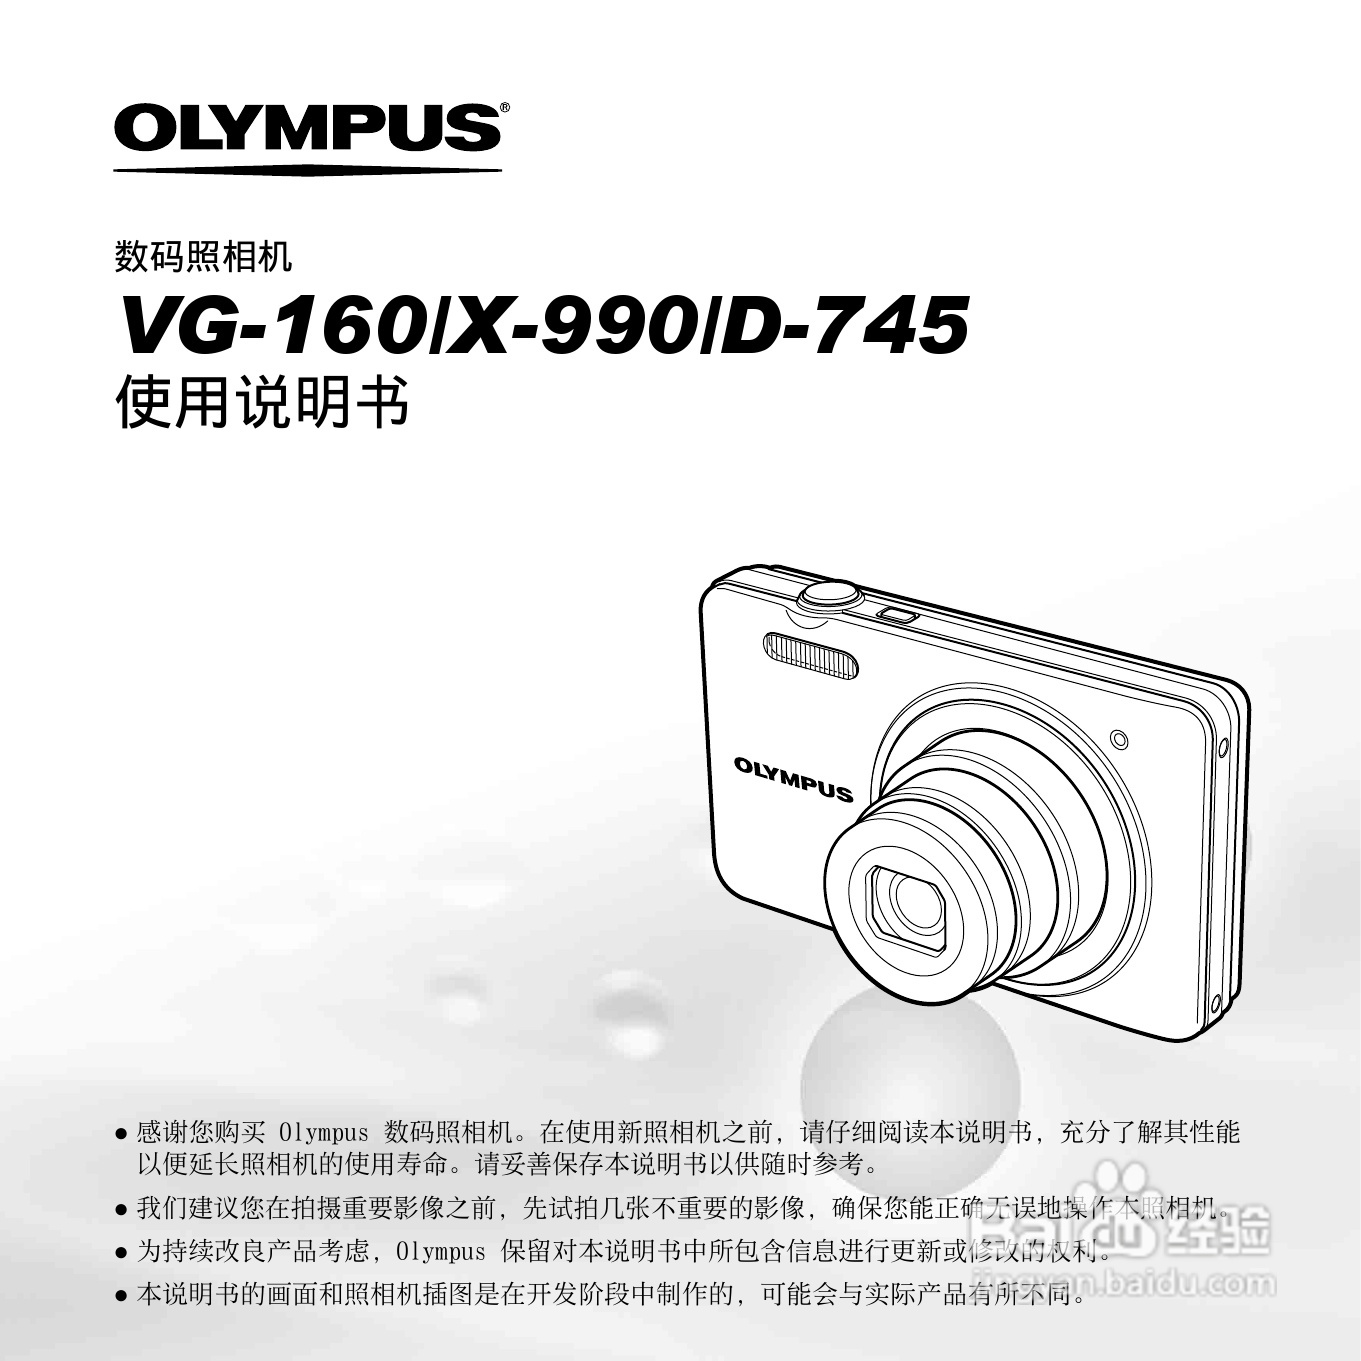 《奥林巴斯d-745数码相机使用说明书,主要介绍该产品的使用方法以及